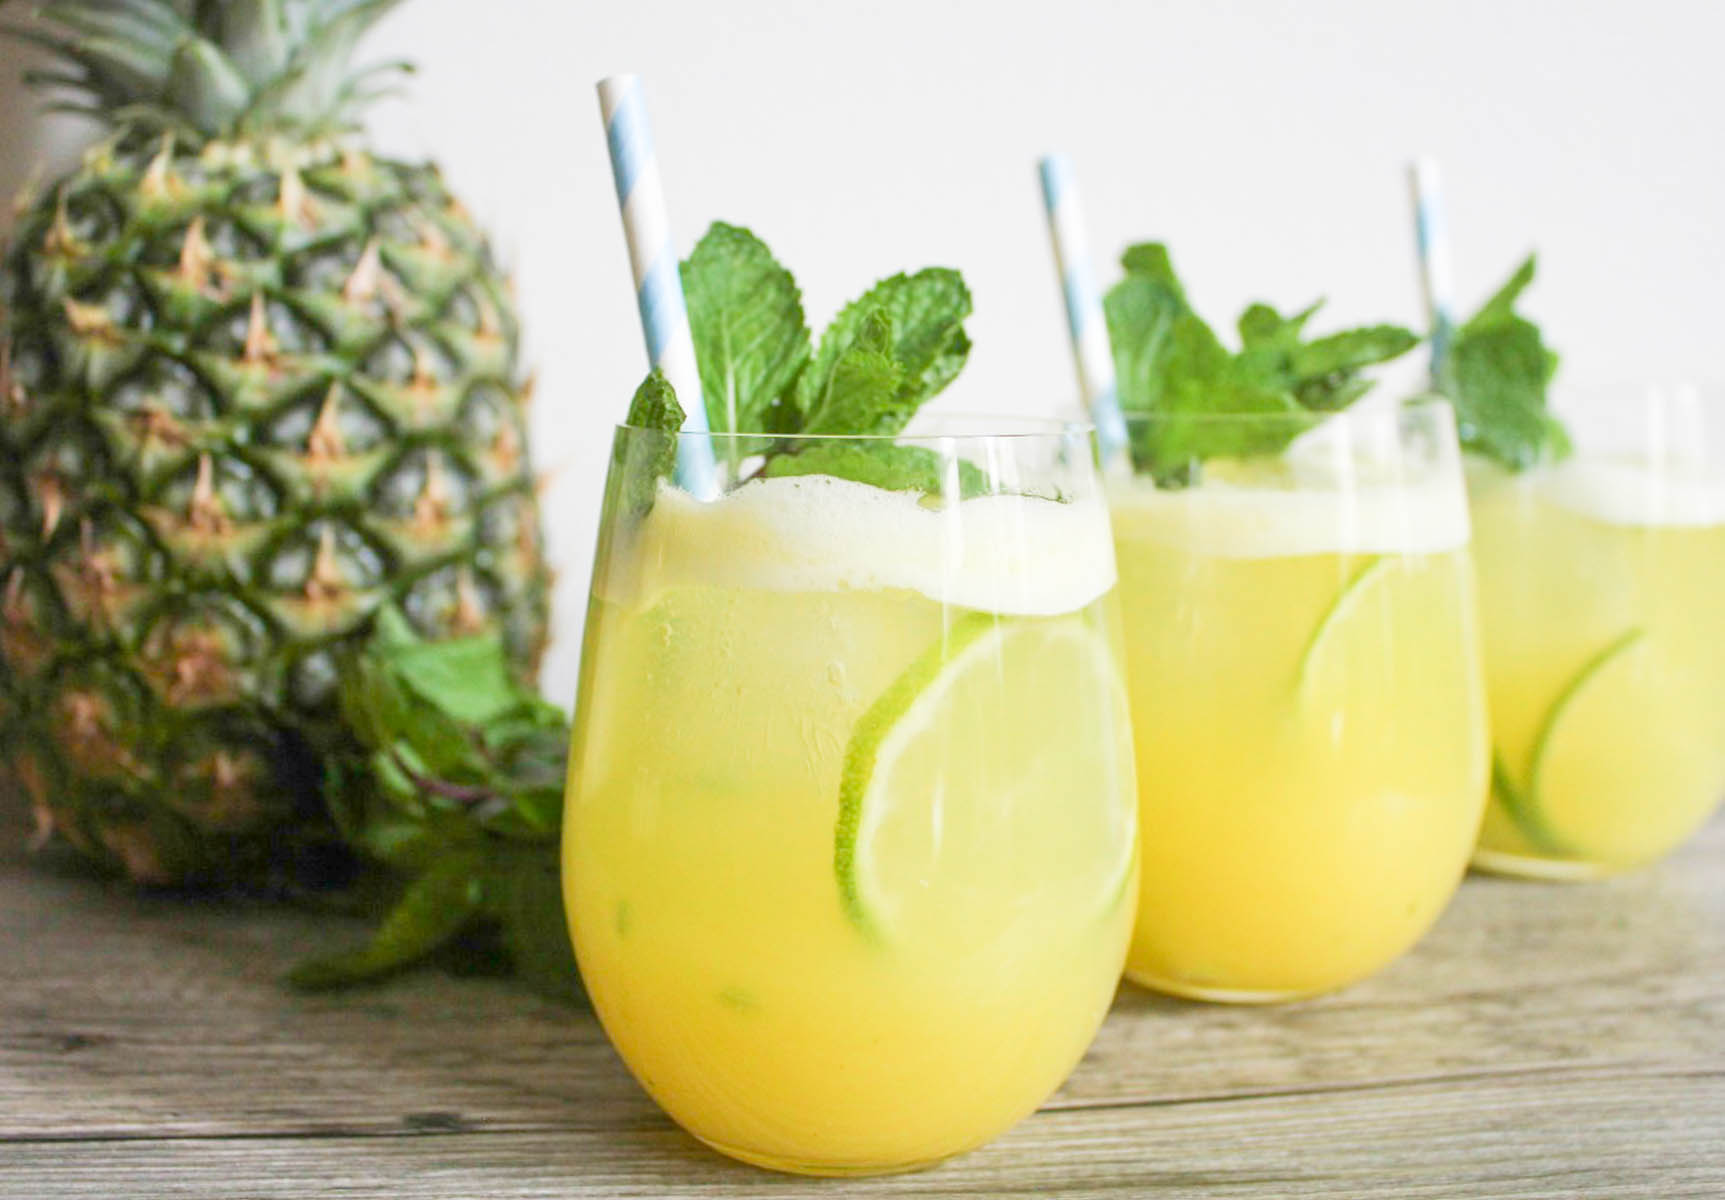 3. Pineapple Juice.